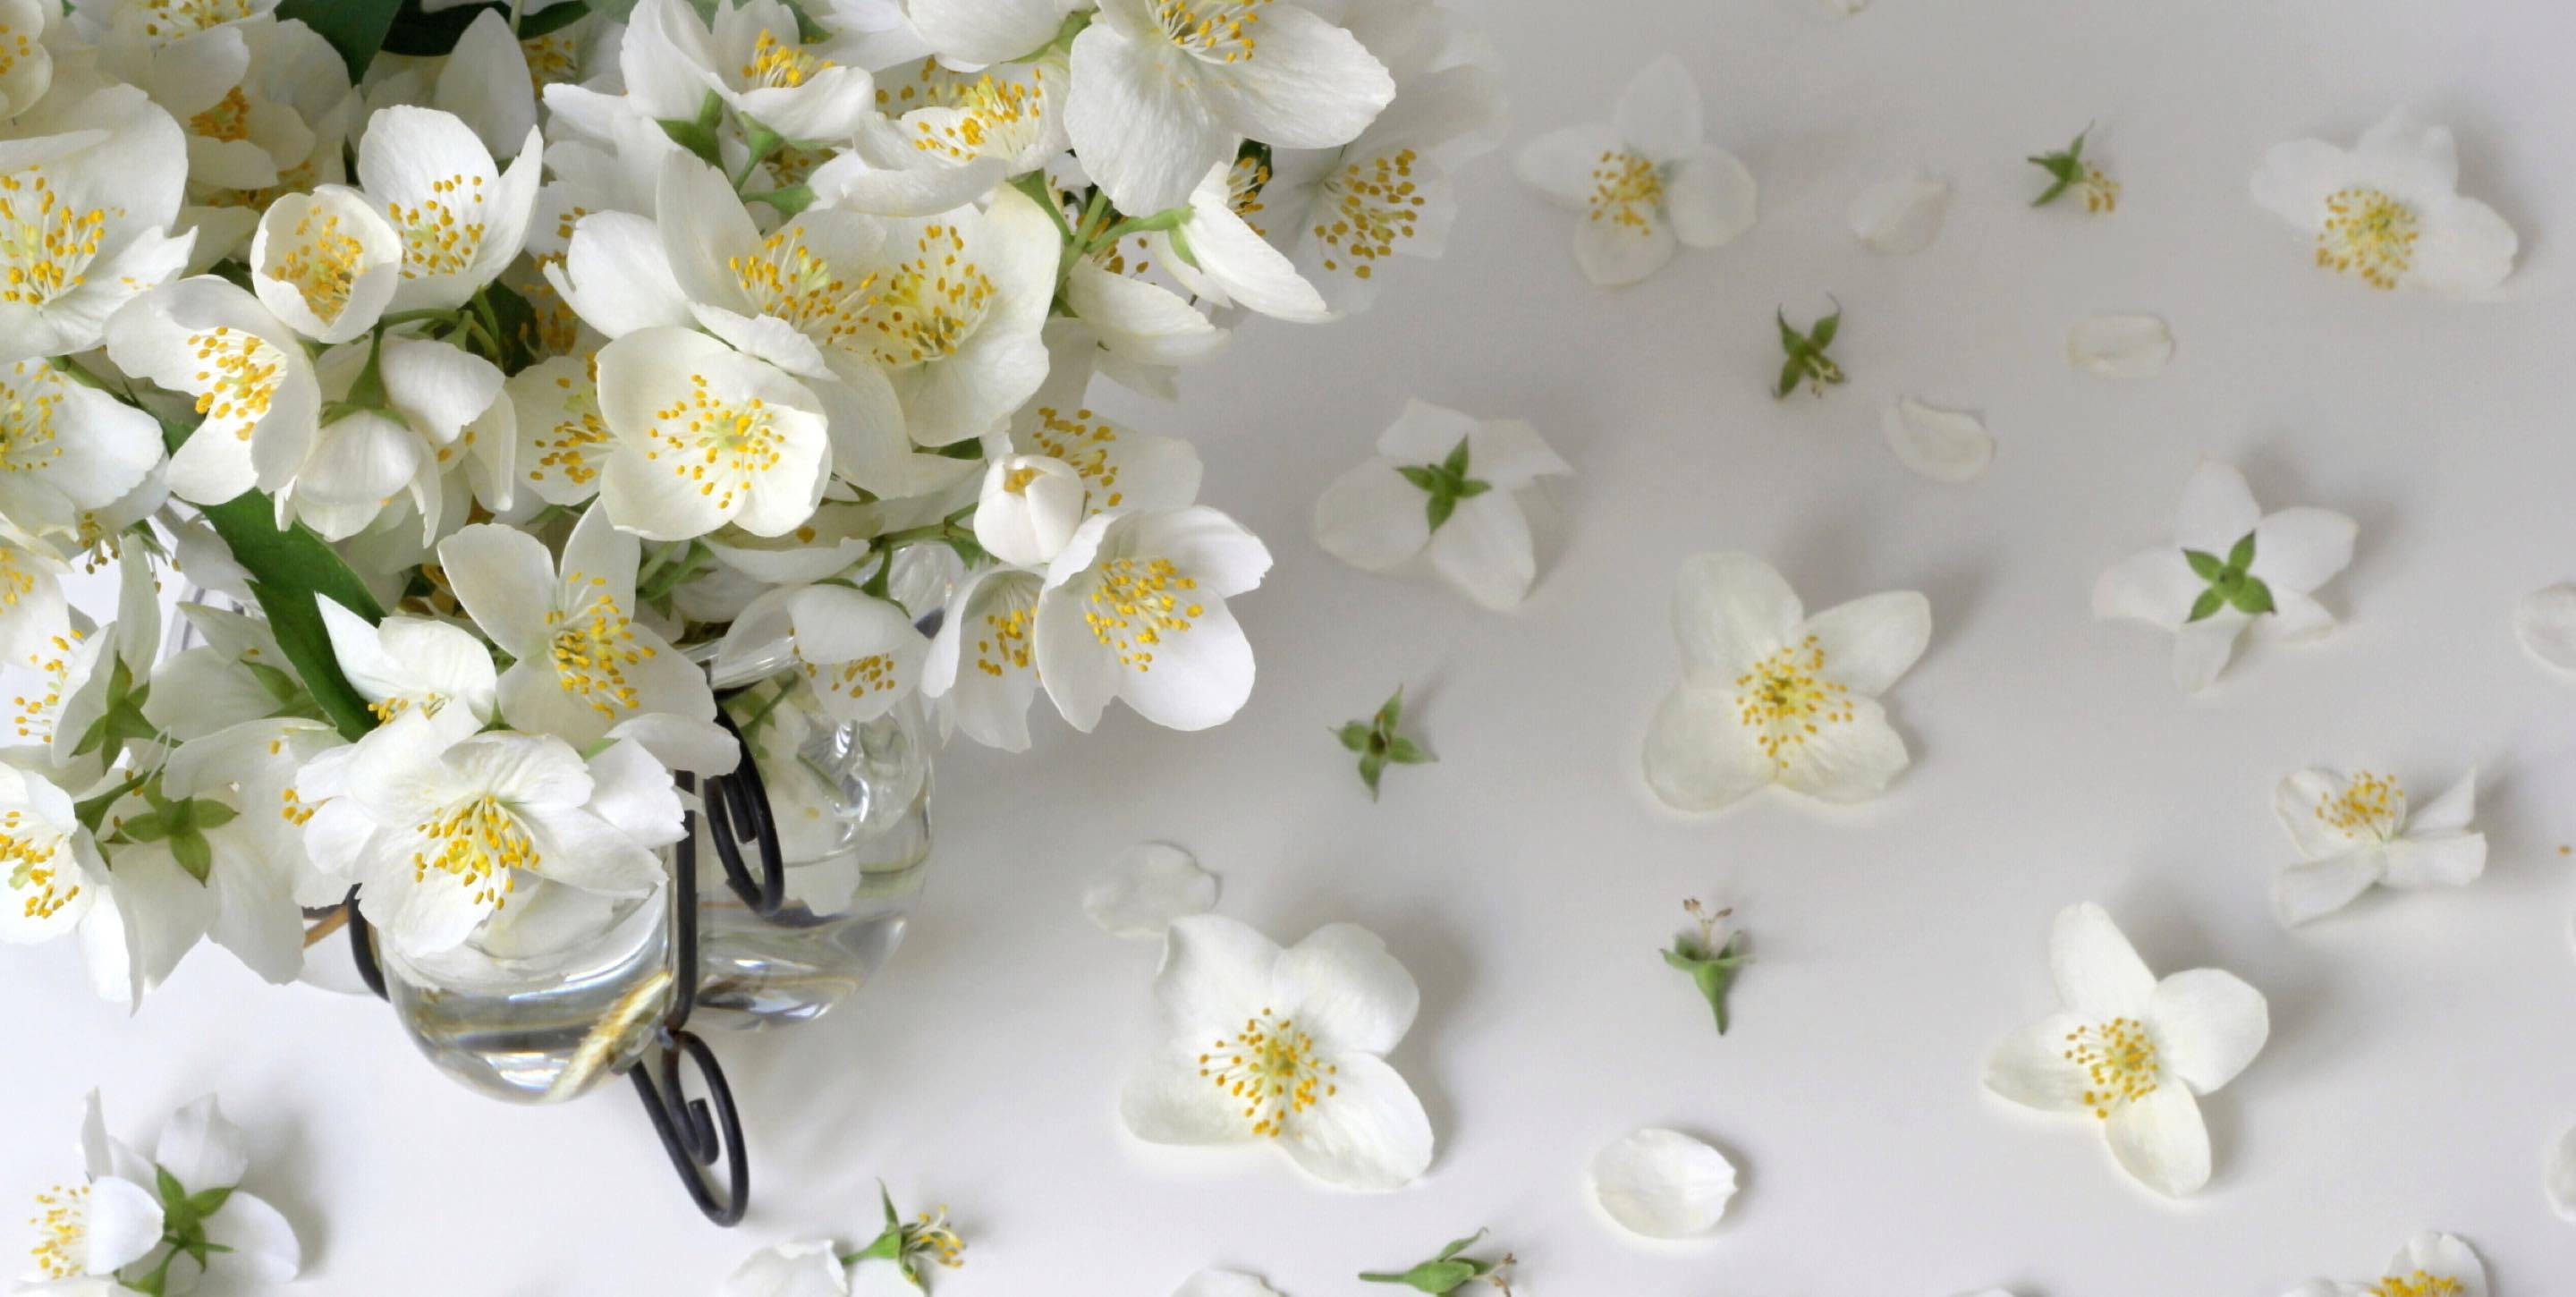 Jasmin#flower#wallpaper  Jasmine flower, Flower aesthetic, White